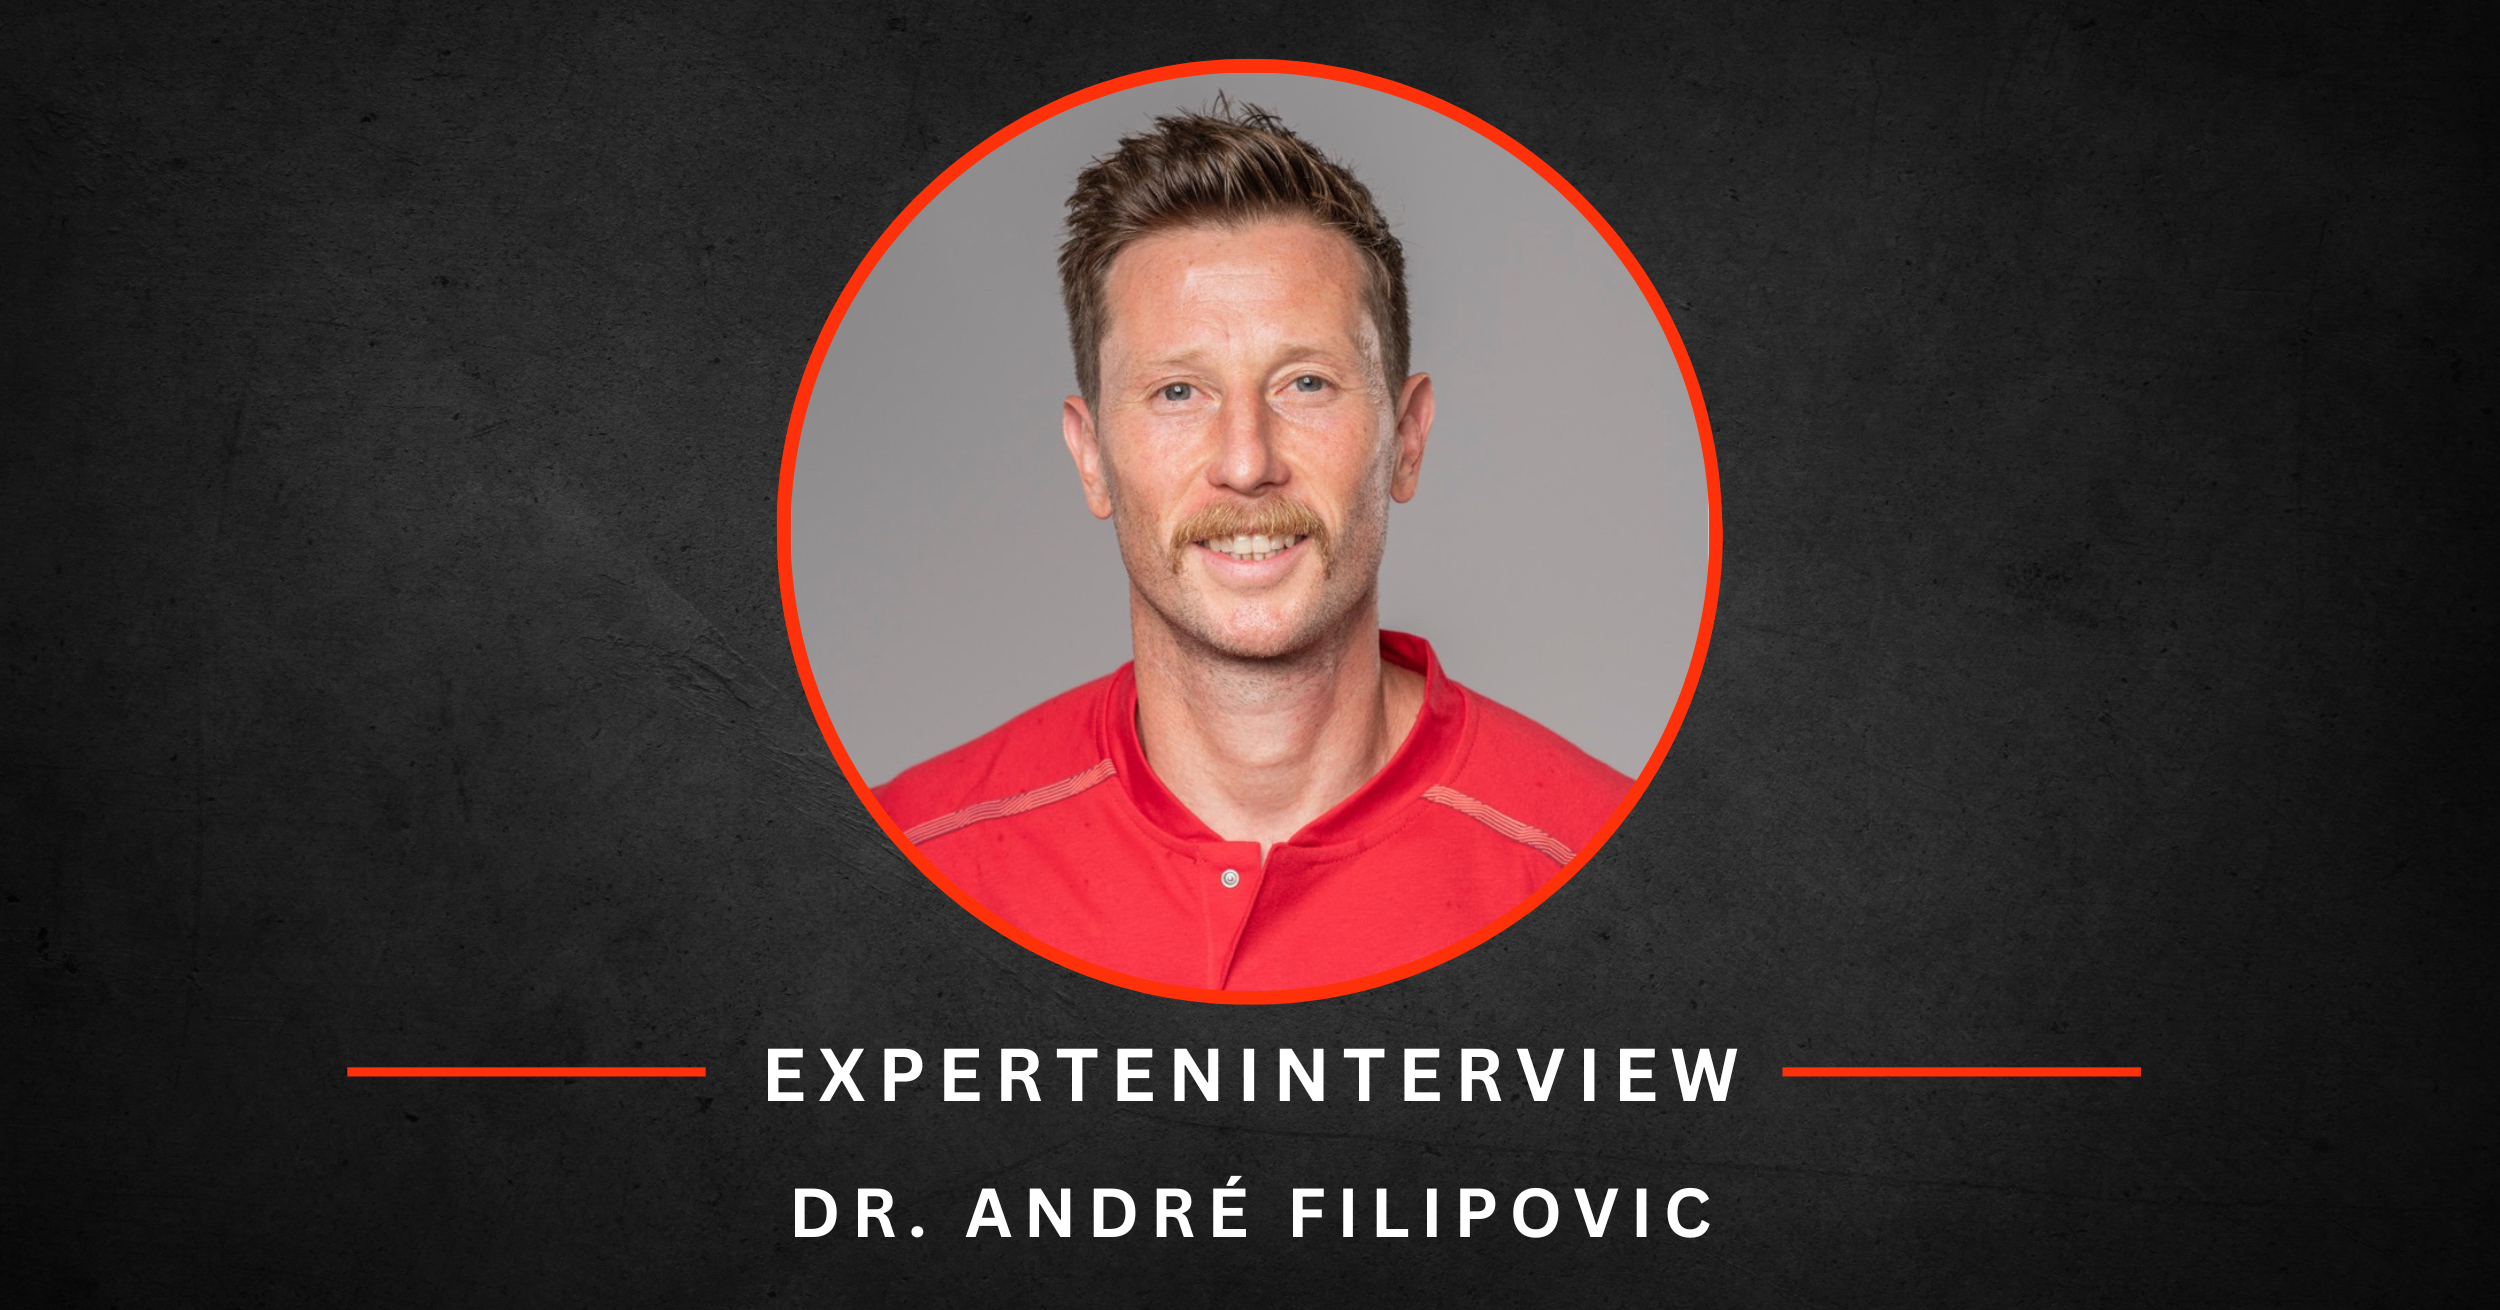 EXPERTENINTERVIEW Andre Filipovic